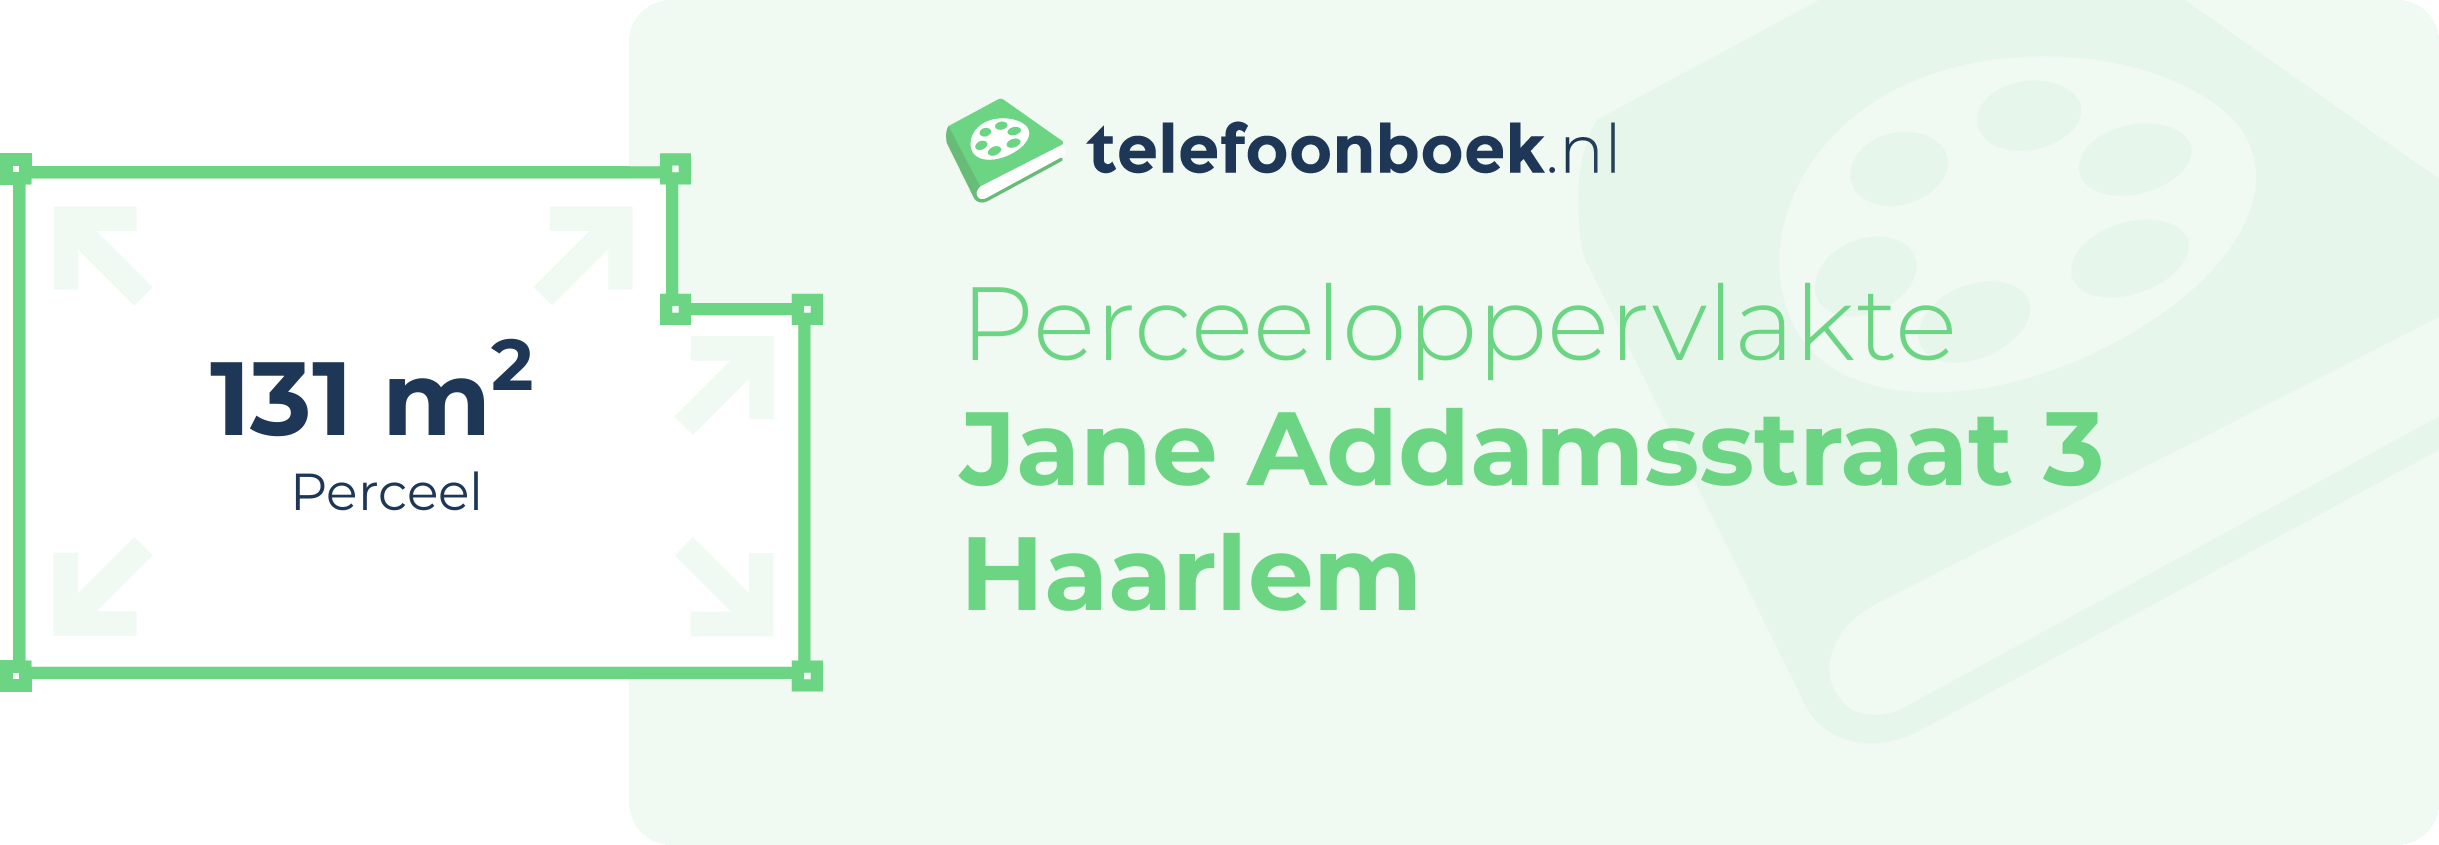 Perceeloppervlakte Jane Addamsstraat 3 Haarlem